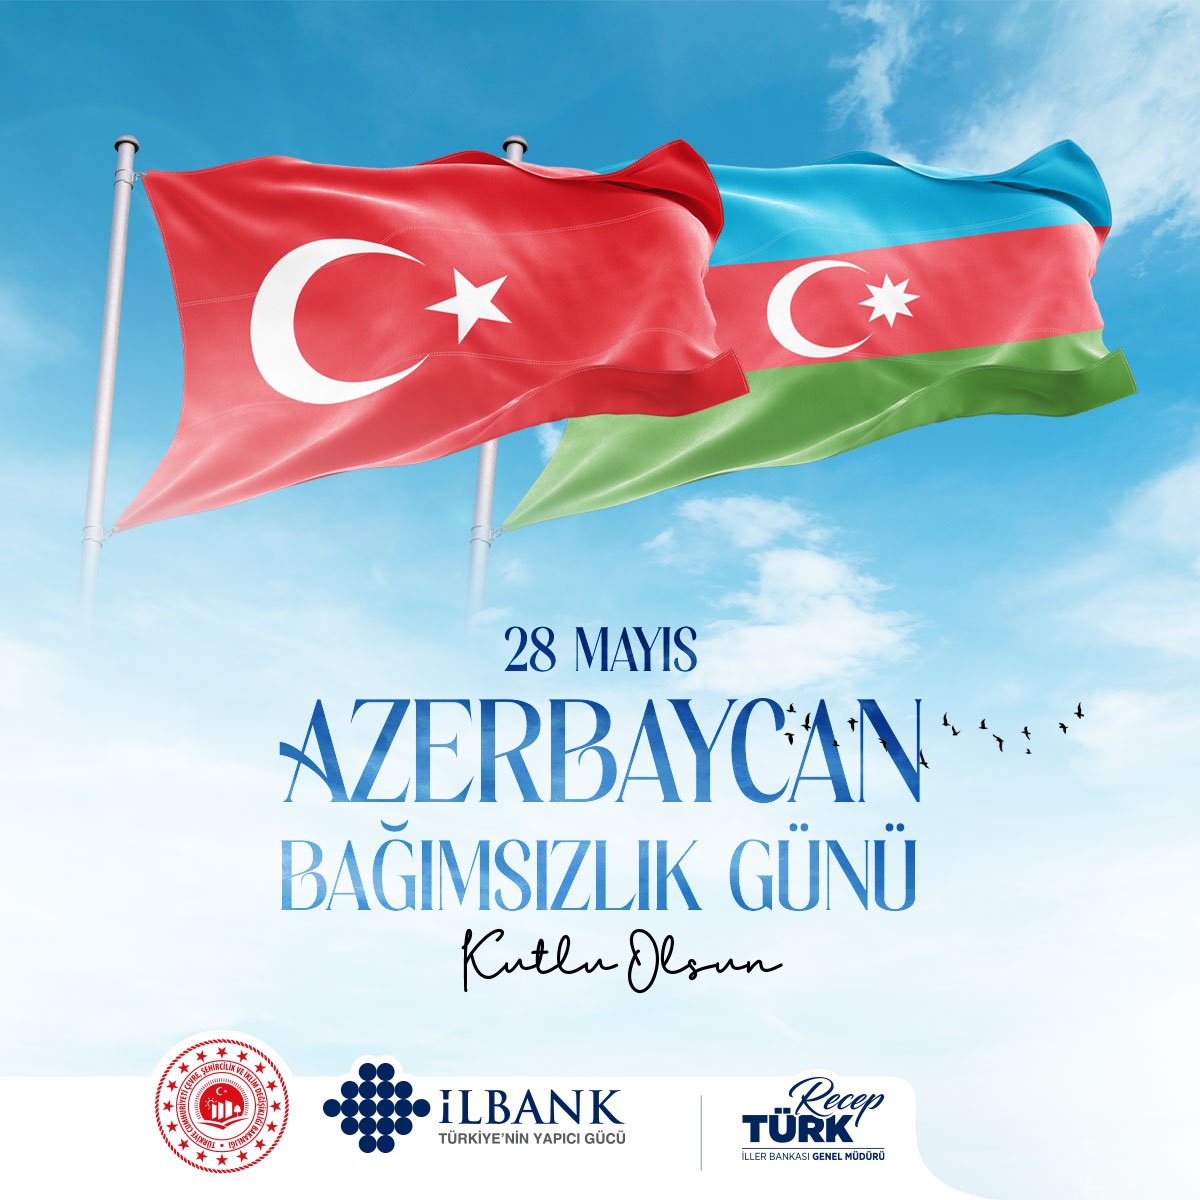 Can Azerbaycan'ın Bağımsızlık Günü kutlu olsun. 

'Tek millet iki devlet' anlayışıyla var olan birliğimiz ve beraberliğimiz daim olsun. 🇹🇷 🇦🇿 
#Azerbaycan